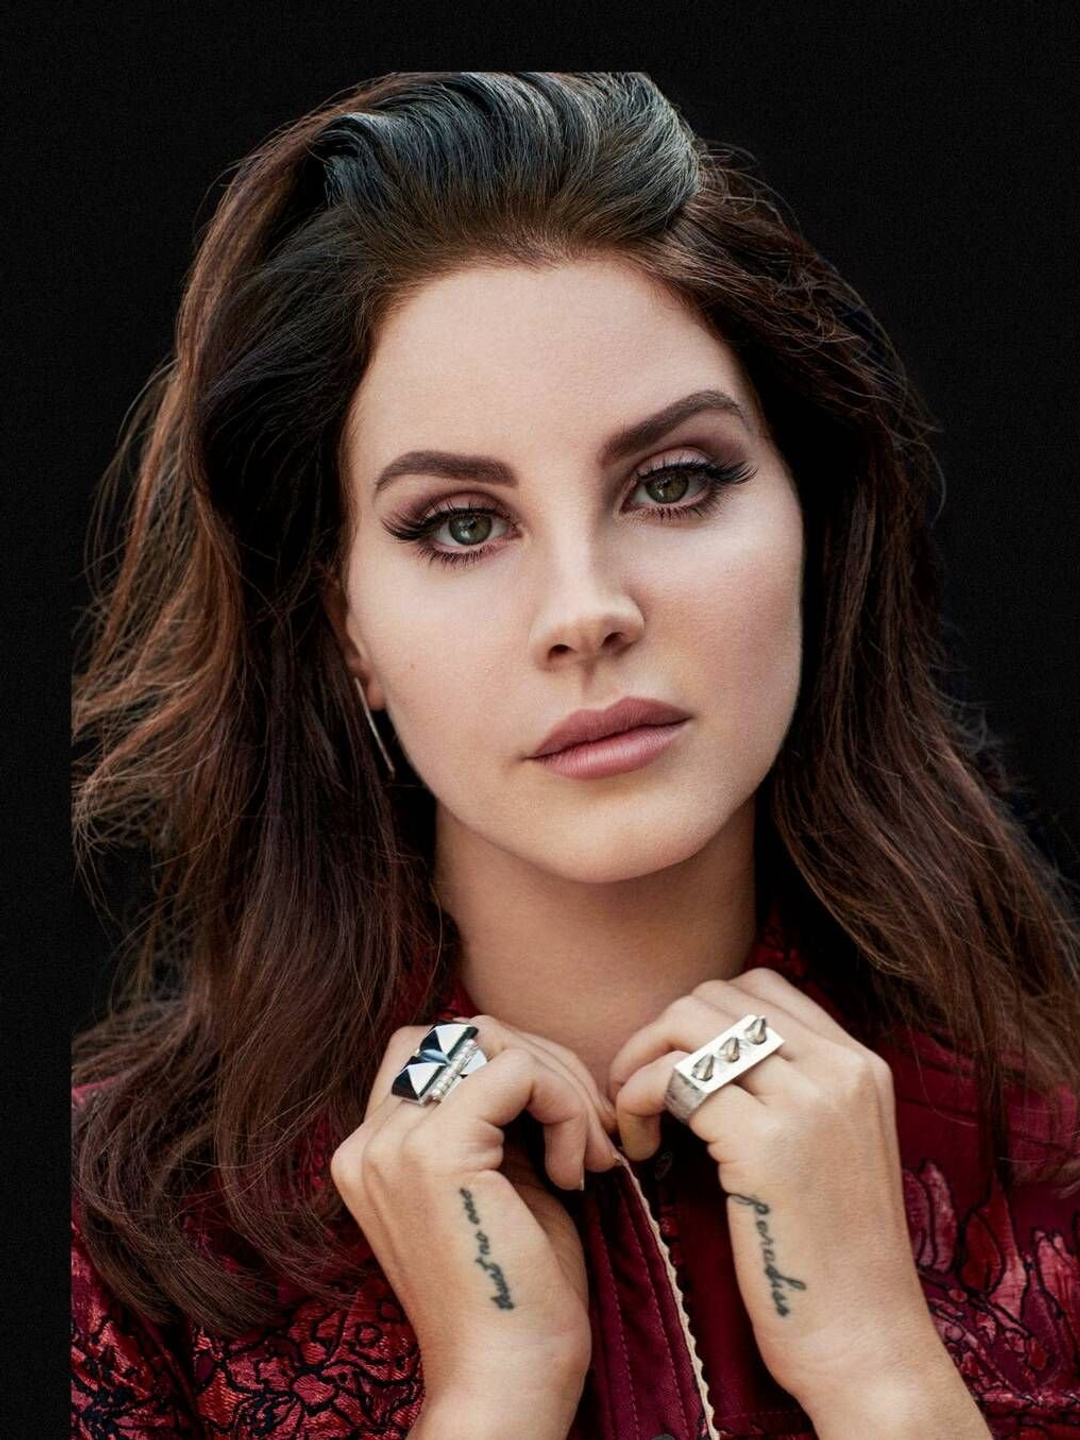 Lana Del Rey social media